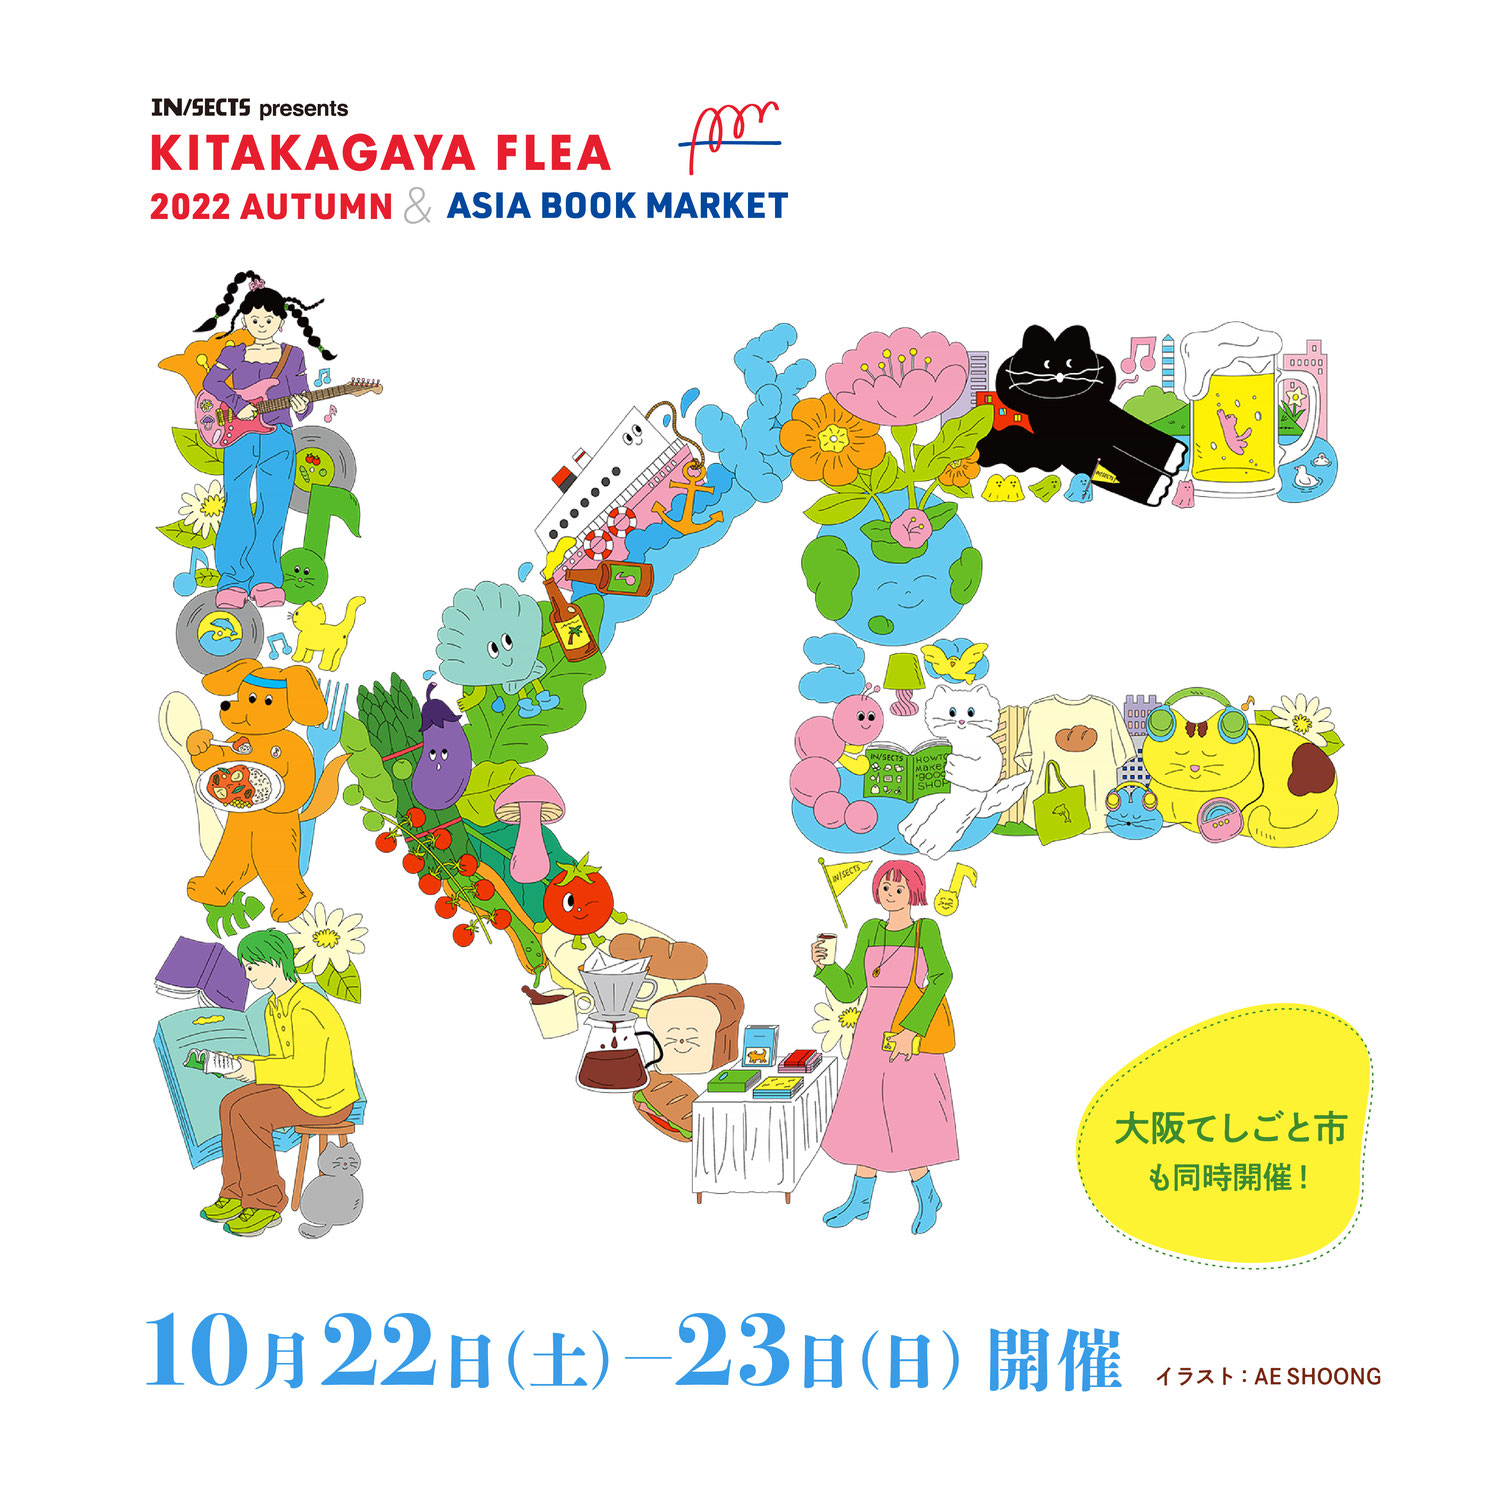 KITAKAGAYA FLEA 2022 AUTUMN & ASIA BOOK MARKET